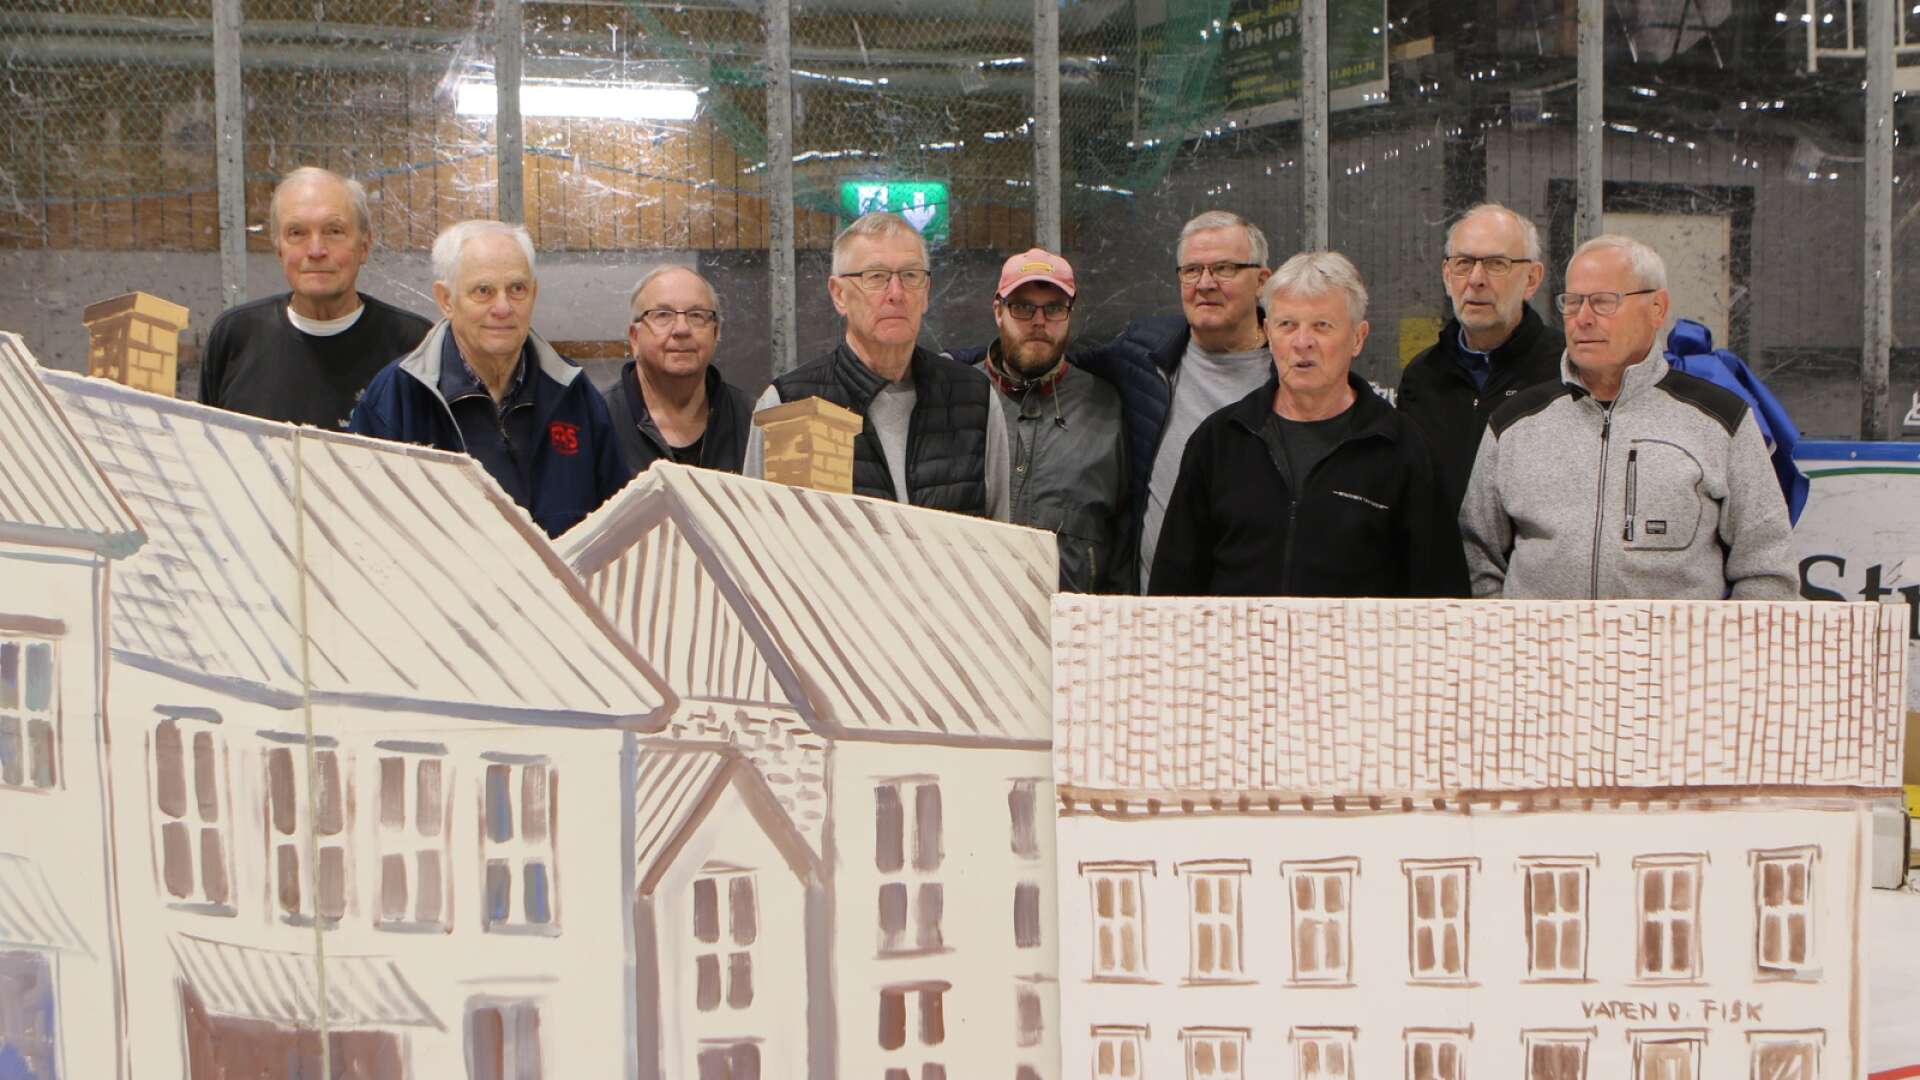 Från vänster Ove Svensson, Per-Olov Örtlund, Göran Olsson, Sören Kronberg, Håkan Stange, Sören Matsson, Roger Fogde, Uno Rööhs och Rolf Johansson.